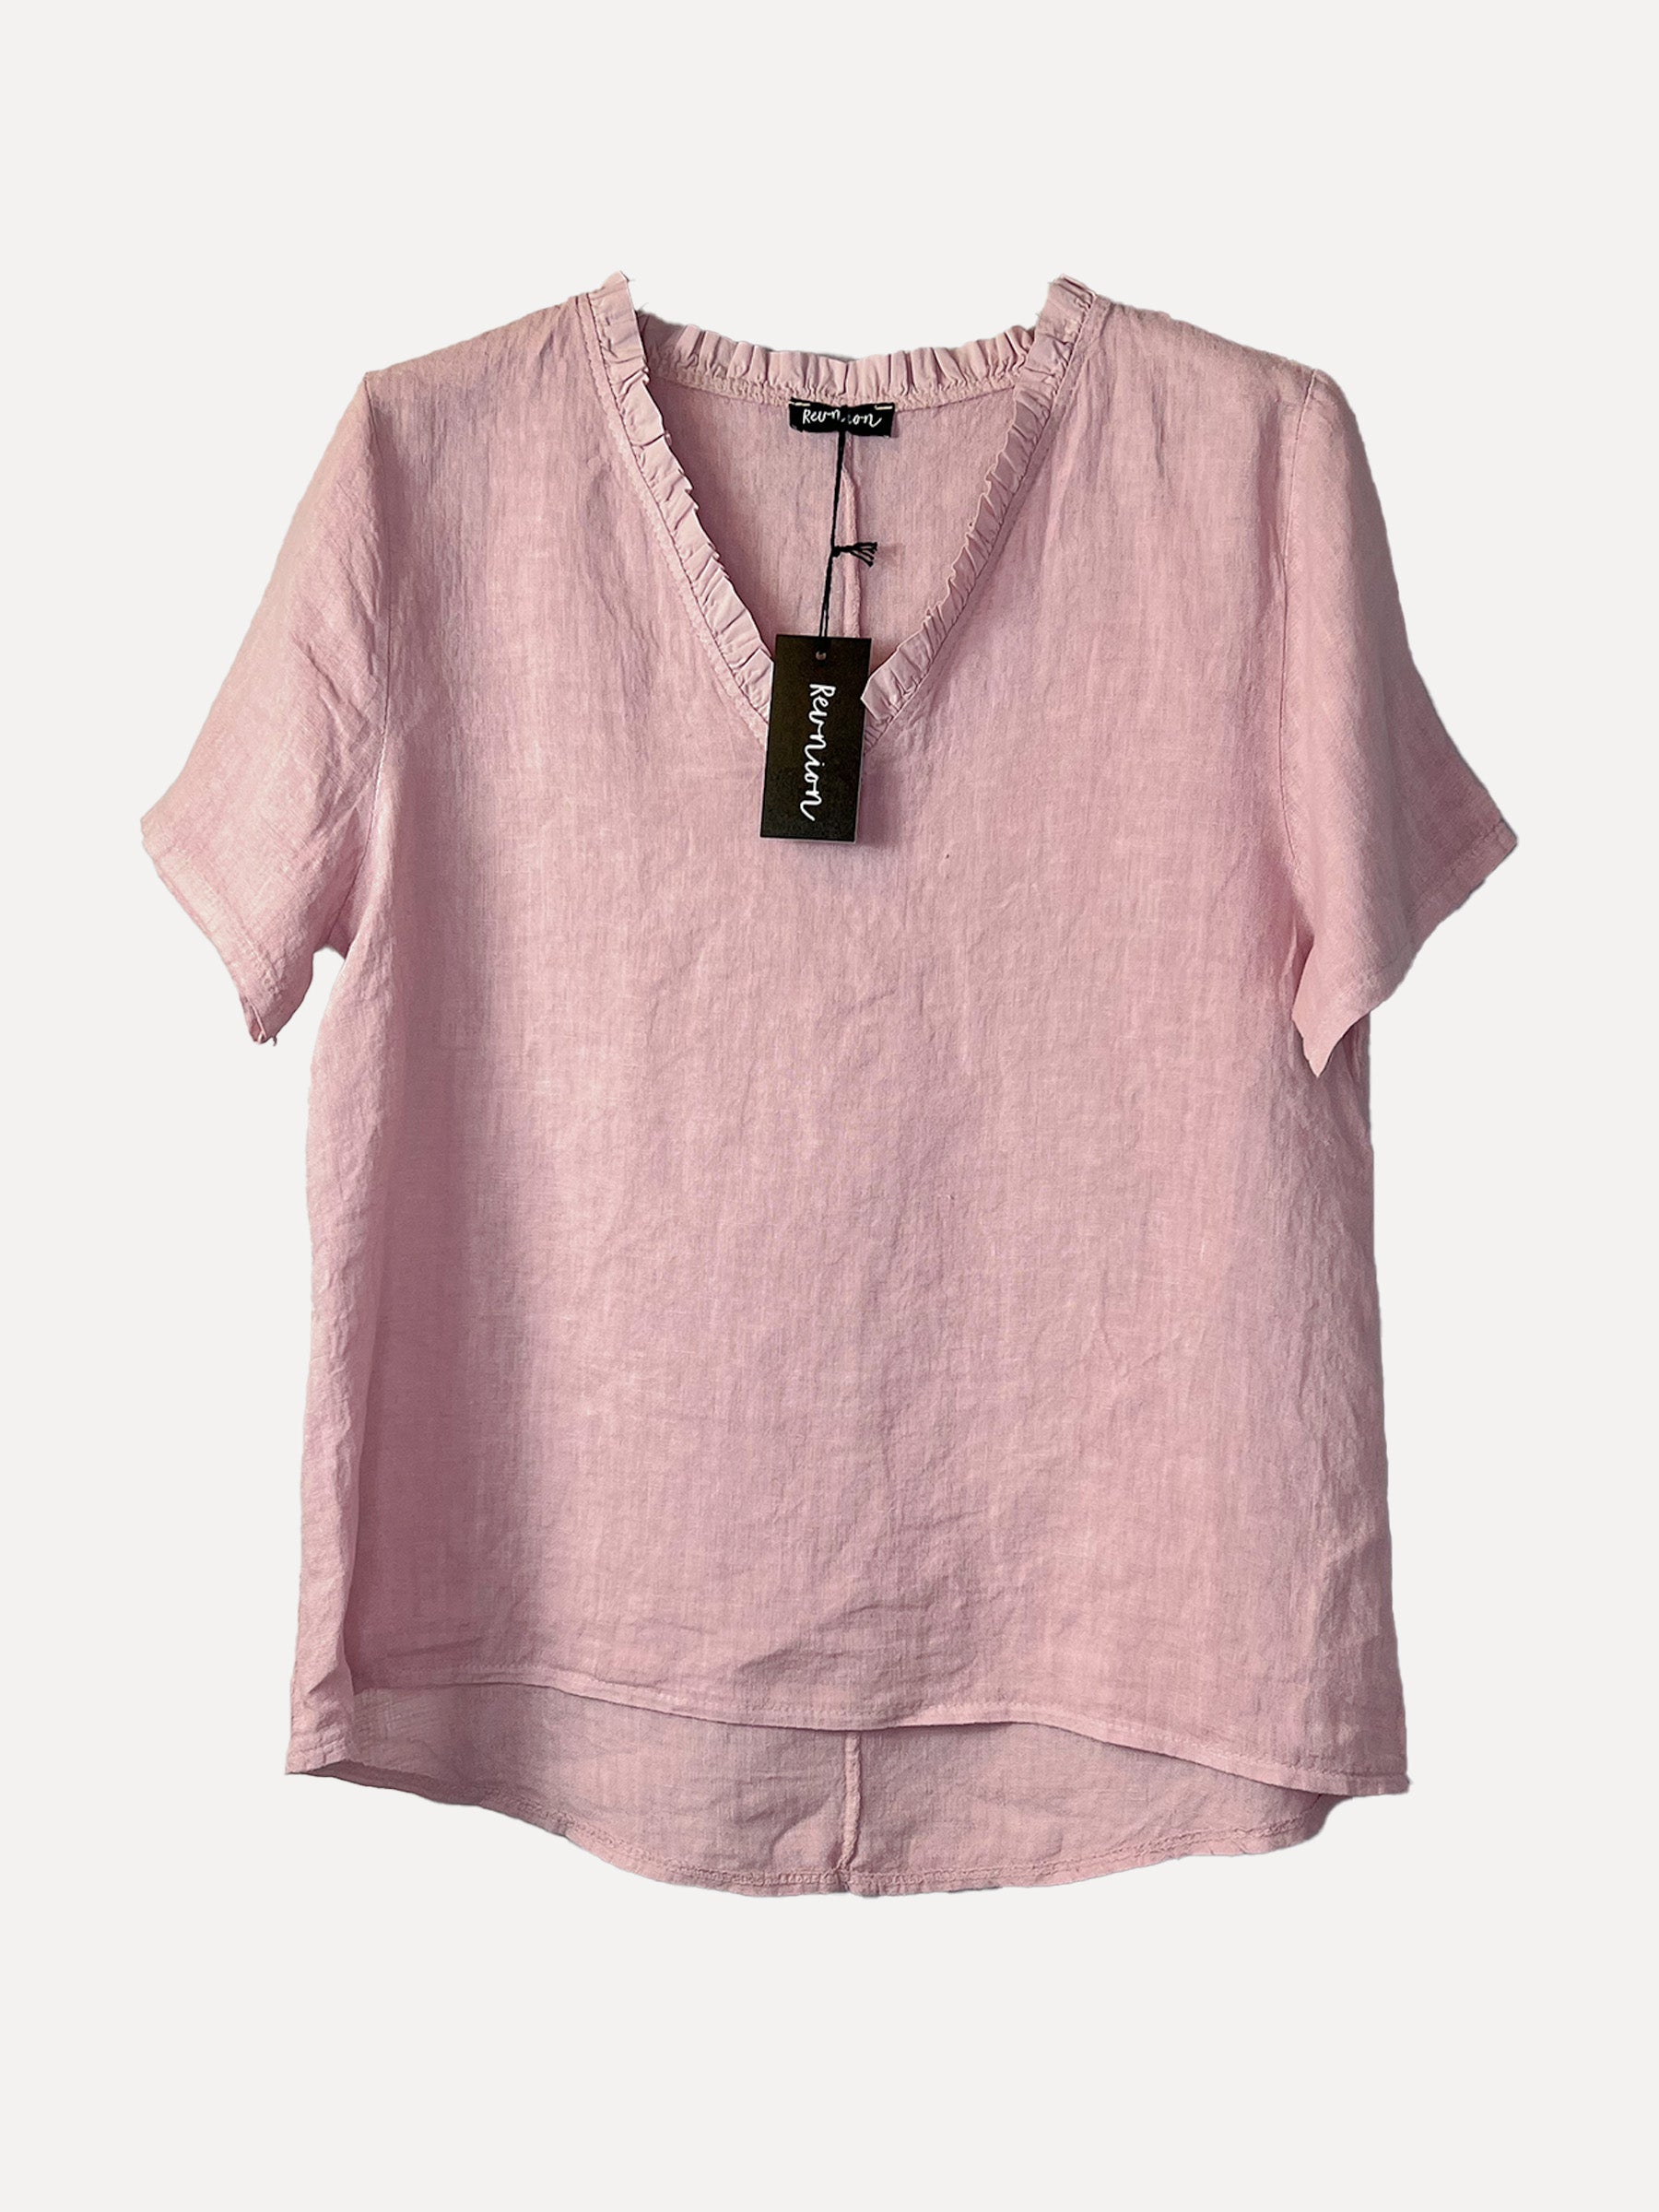 GRETA T-Shirt, Light Pink